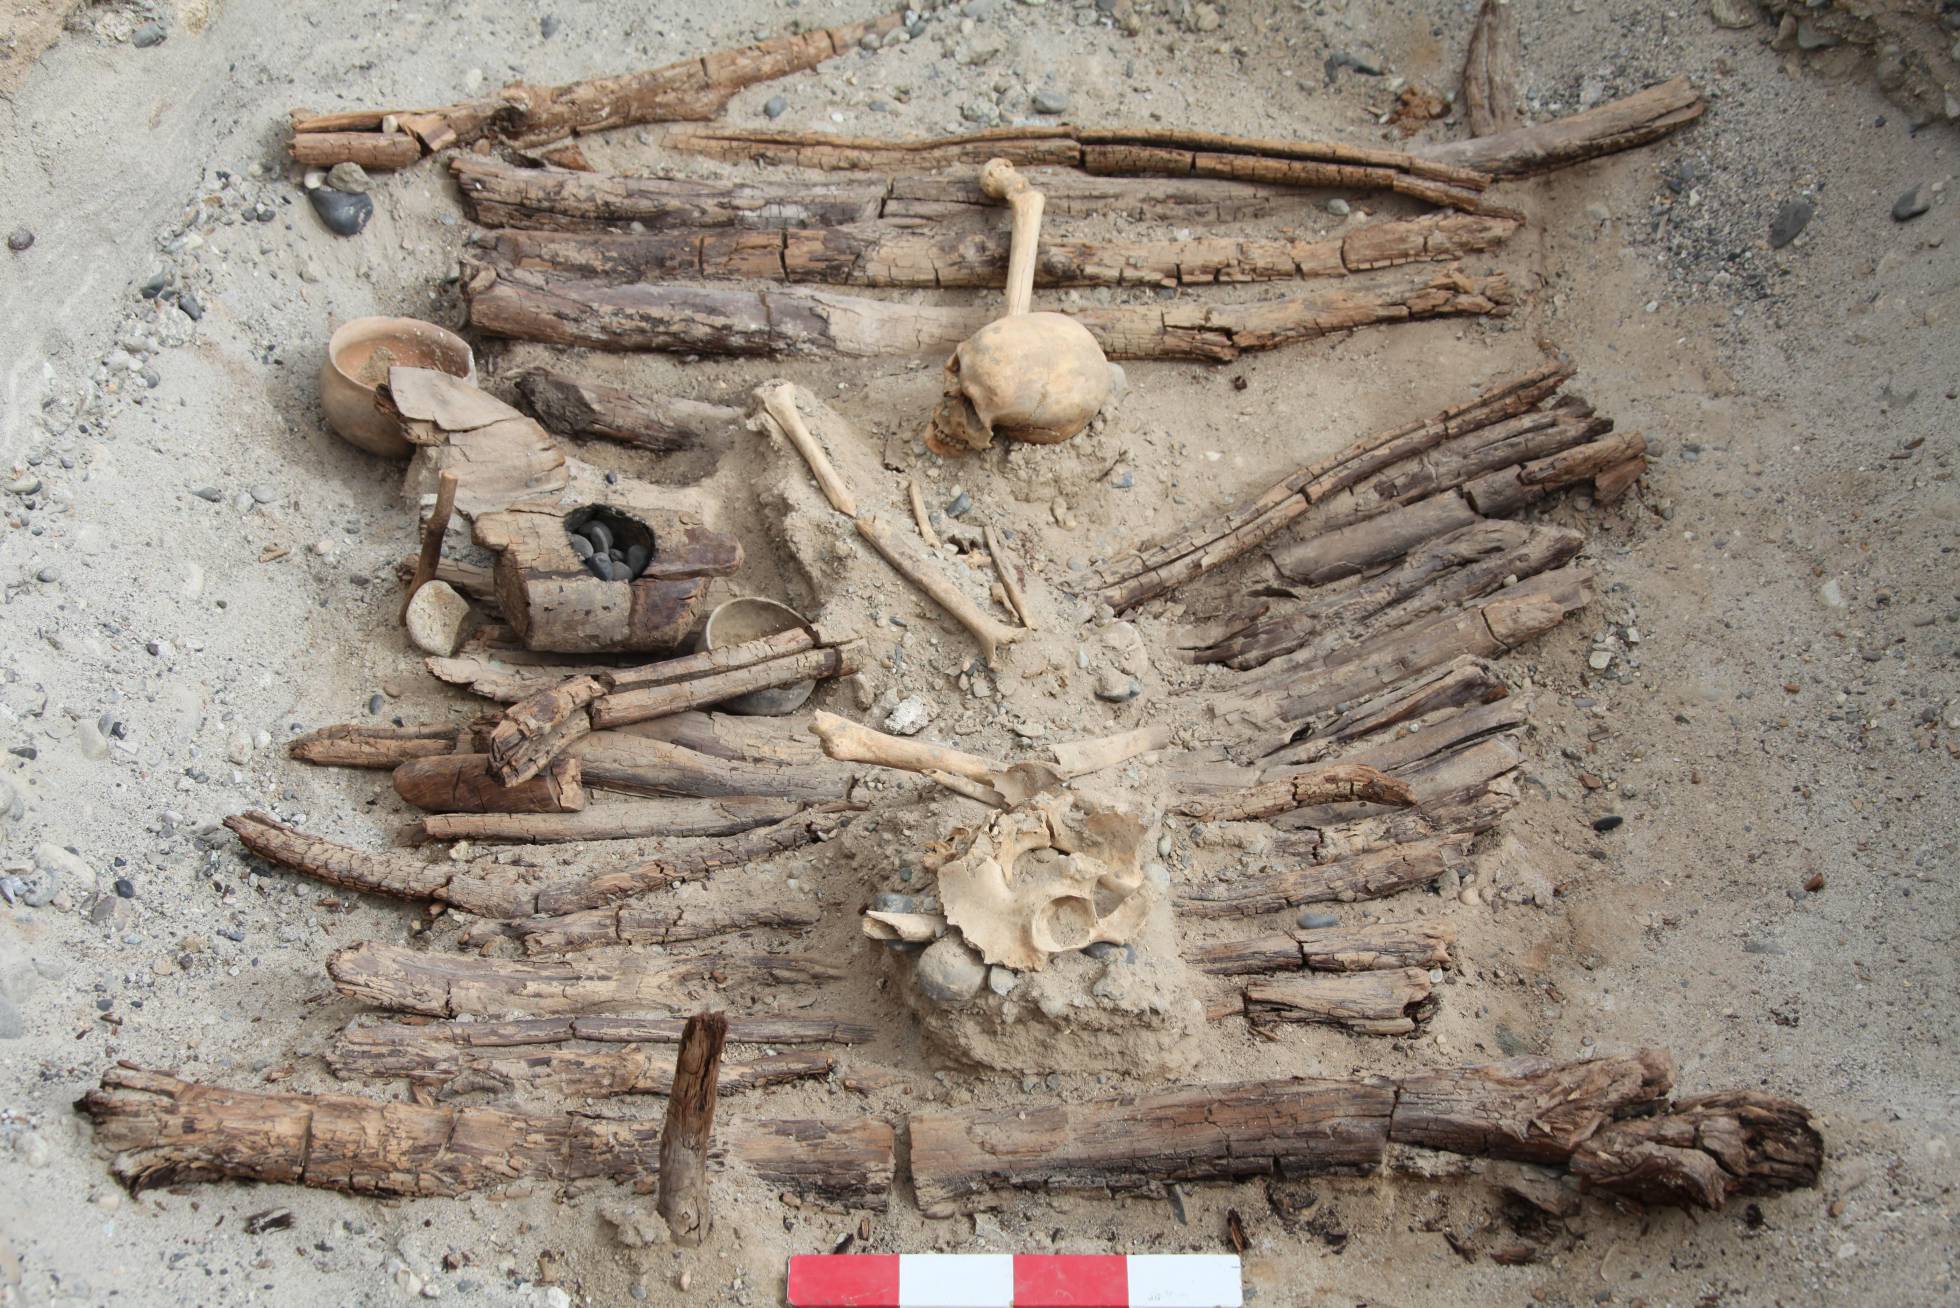 Científicos encuentran evidencia de marihuana en un sitio funerario de hace 2,500 años